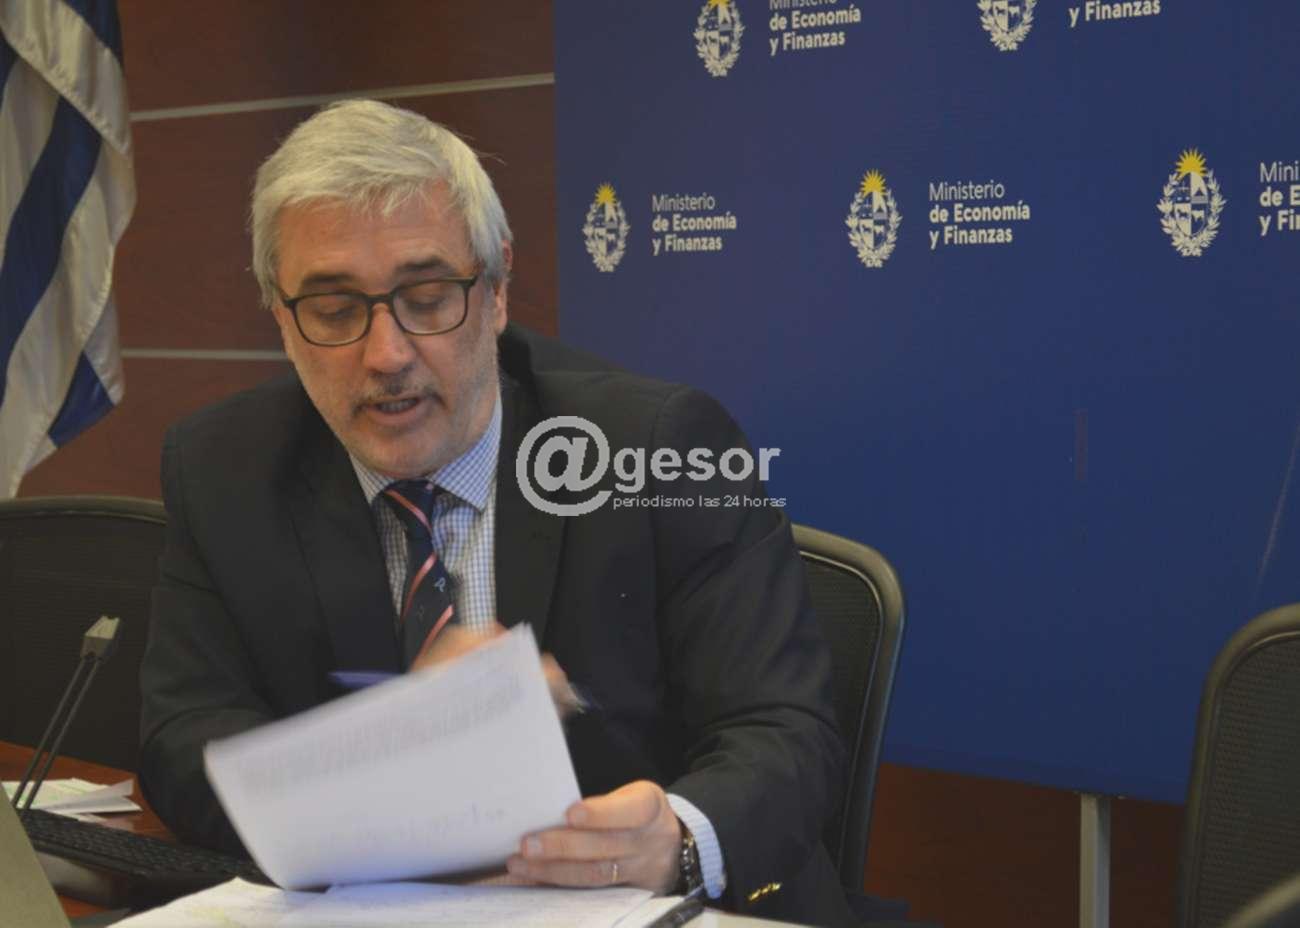 Afirmó el subsecretario de Economía y Finanzas Alejandro Irastorza durante  una conferencia sobre oportunidades de inversiones y negocios en Uruguay.